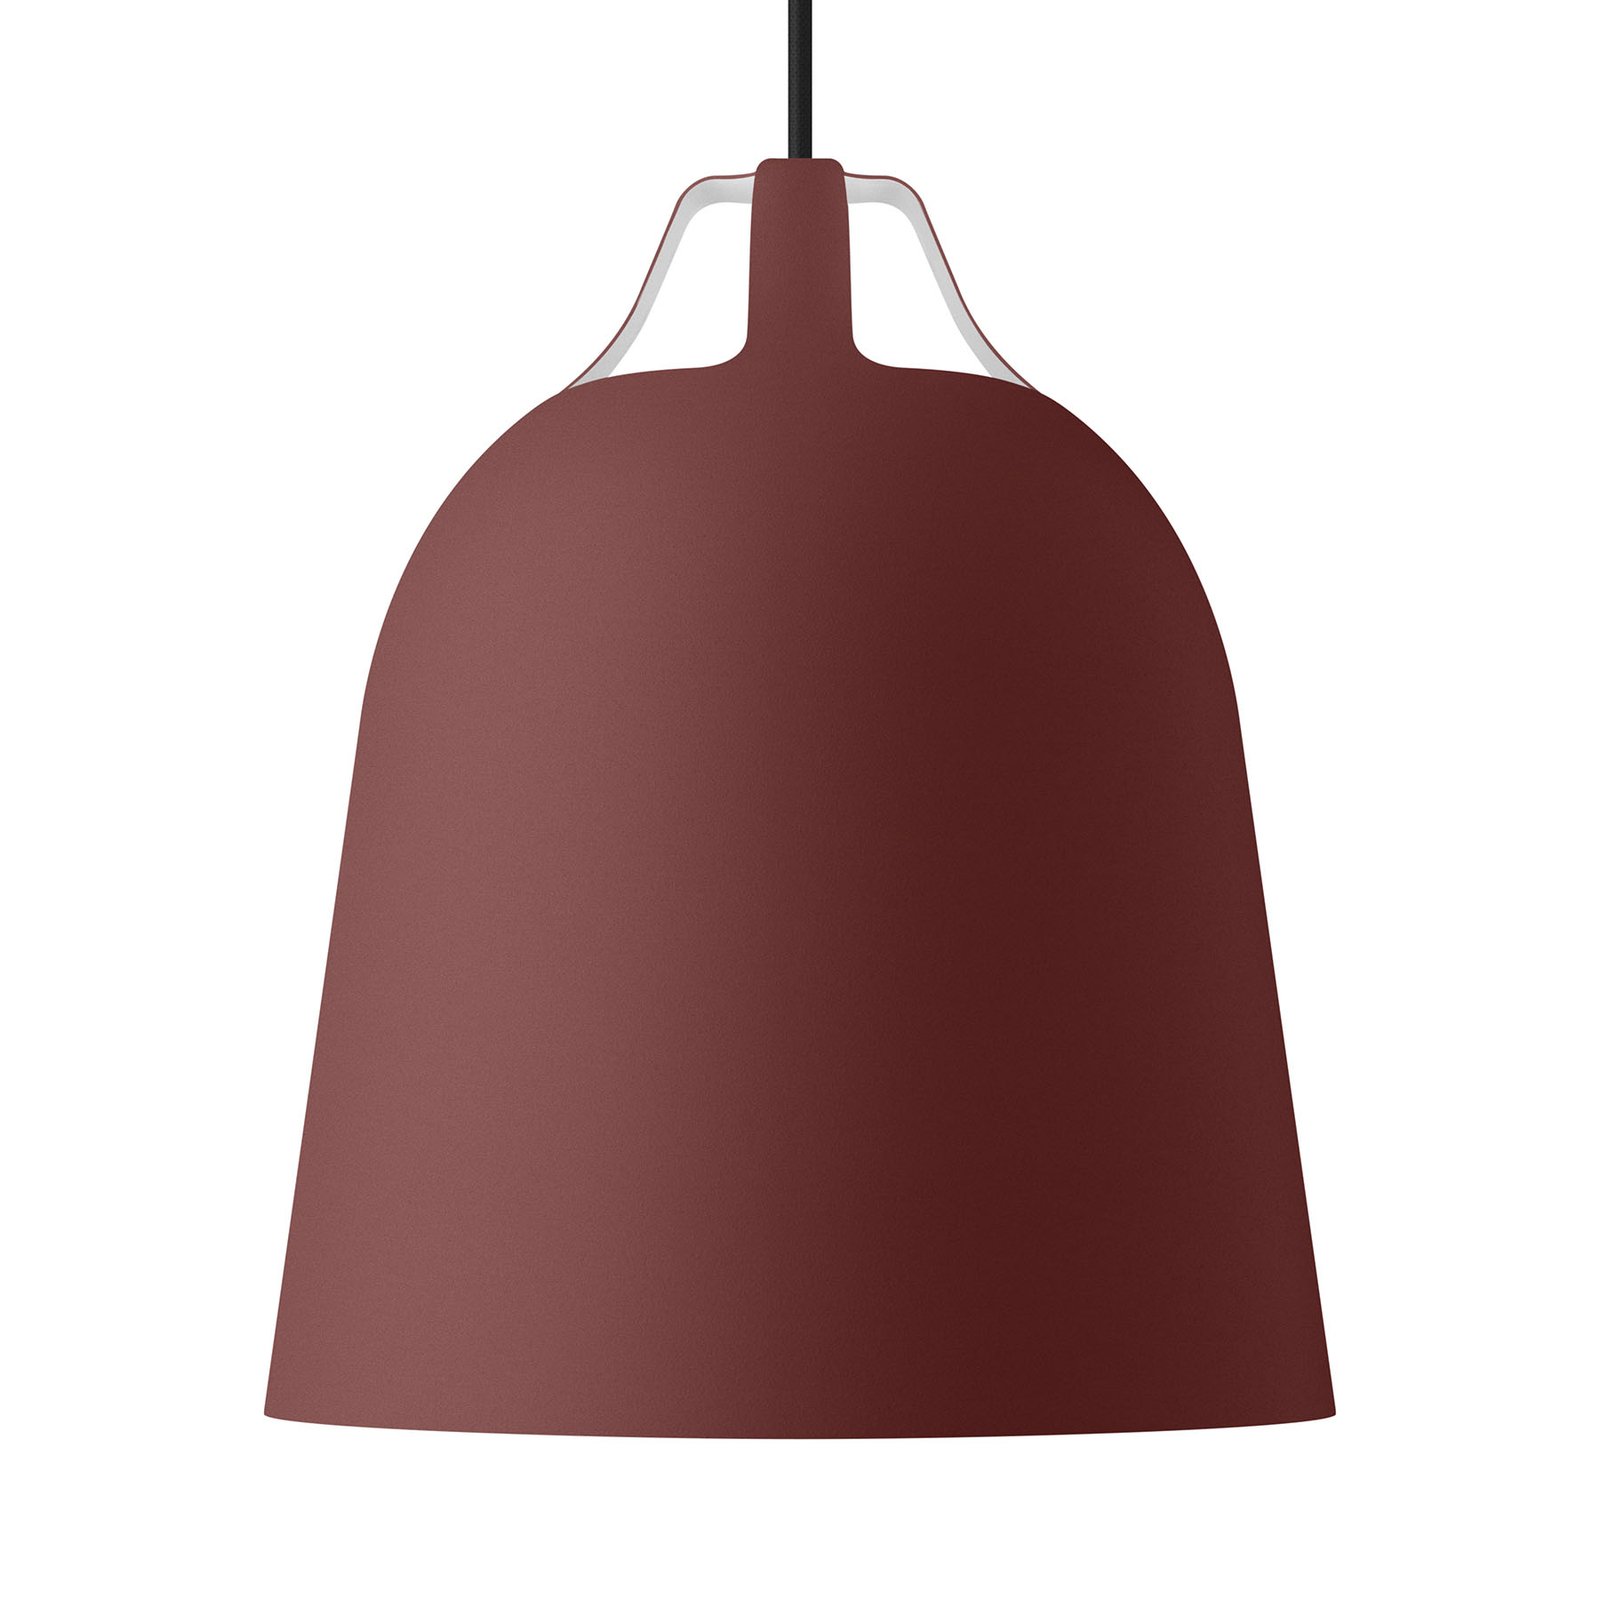 EVA Solo Clover lampa wisząca Ø 21cm, czerwona